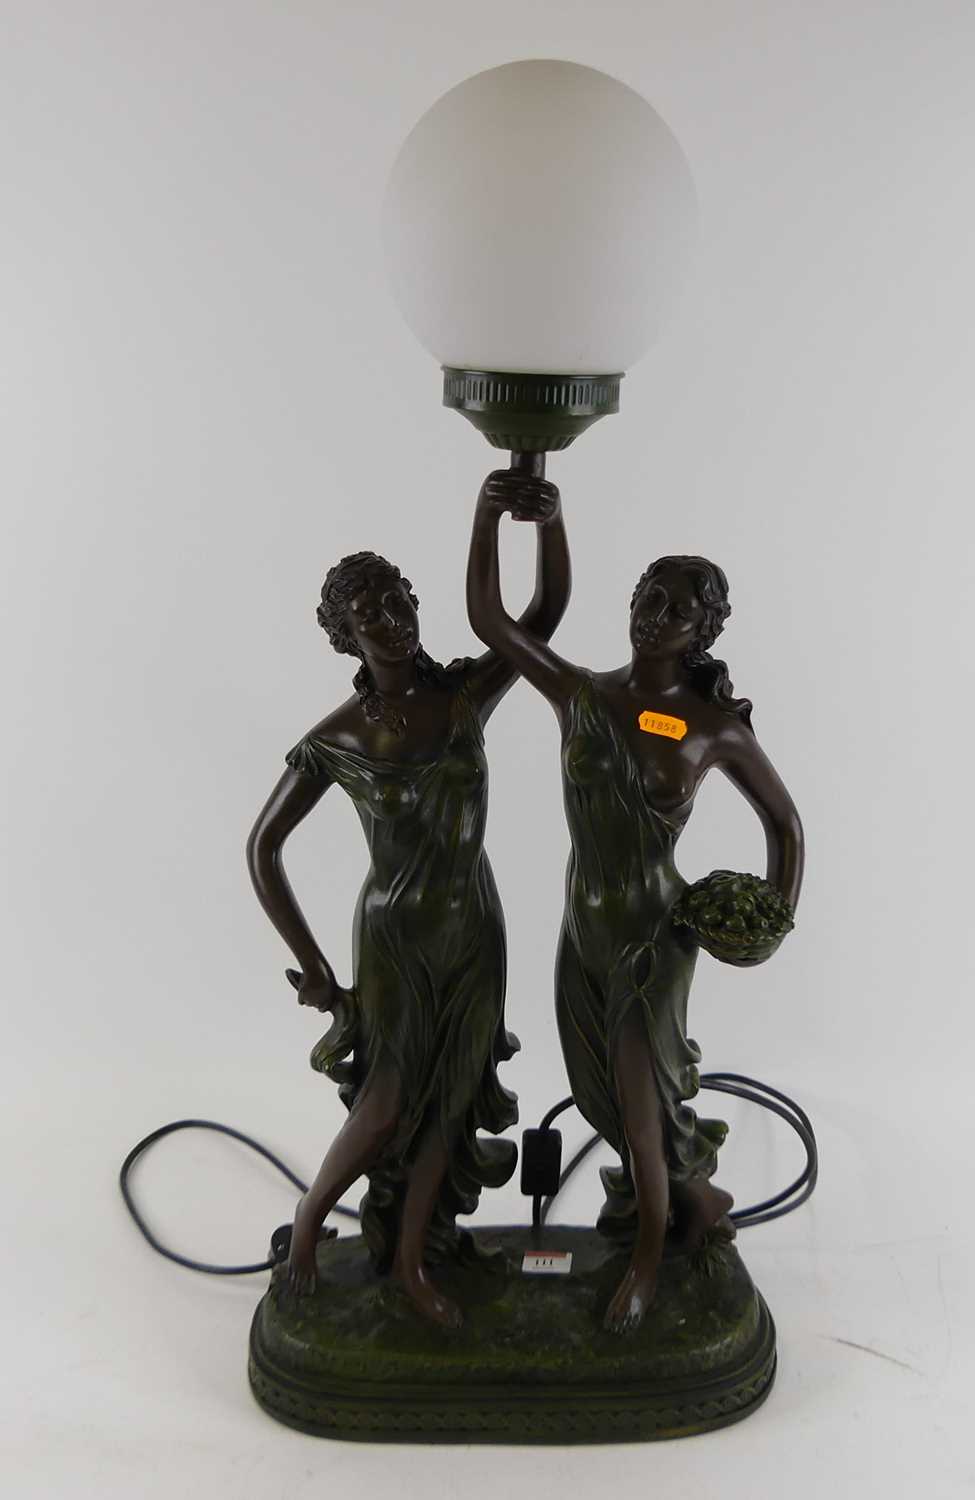 Lot 111 - A large Art Nouveau style resin table lamp...